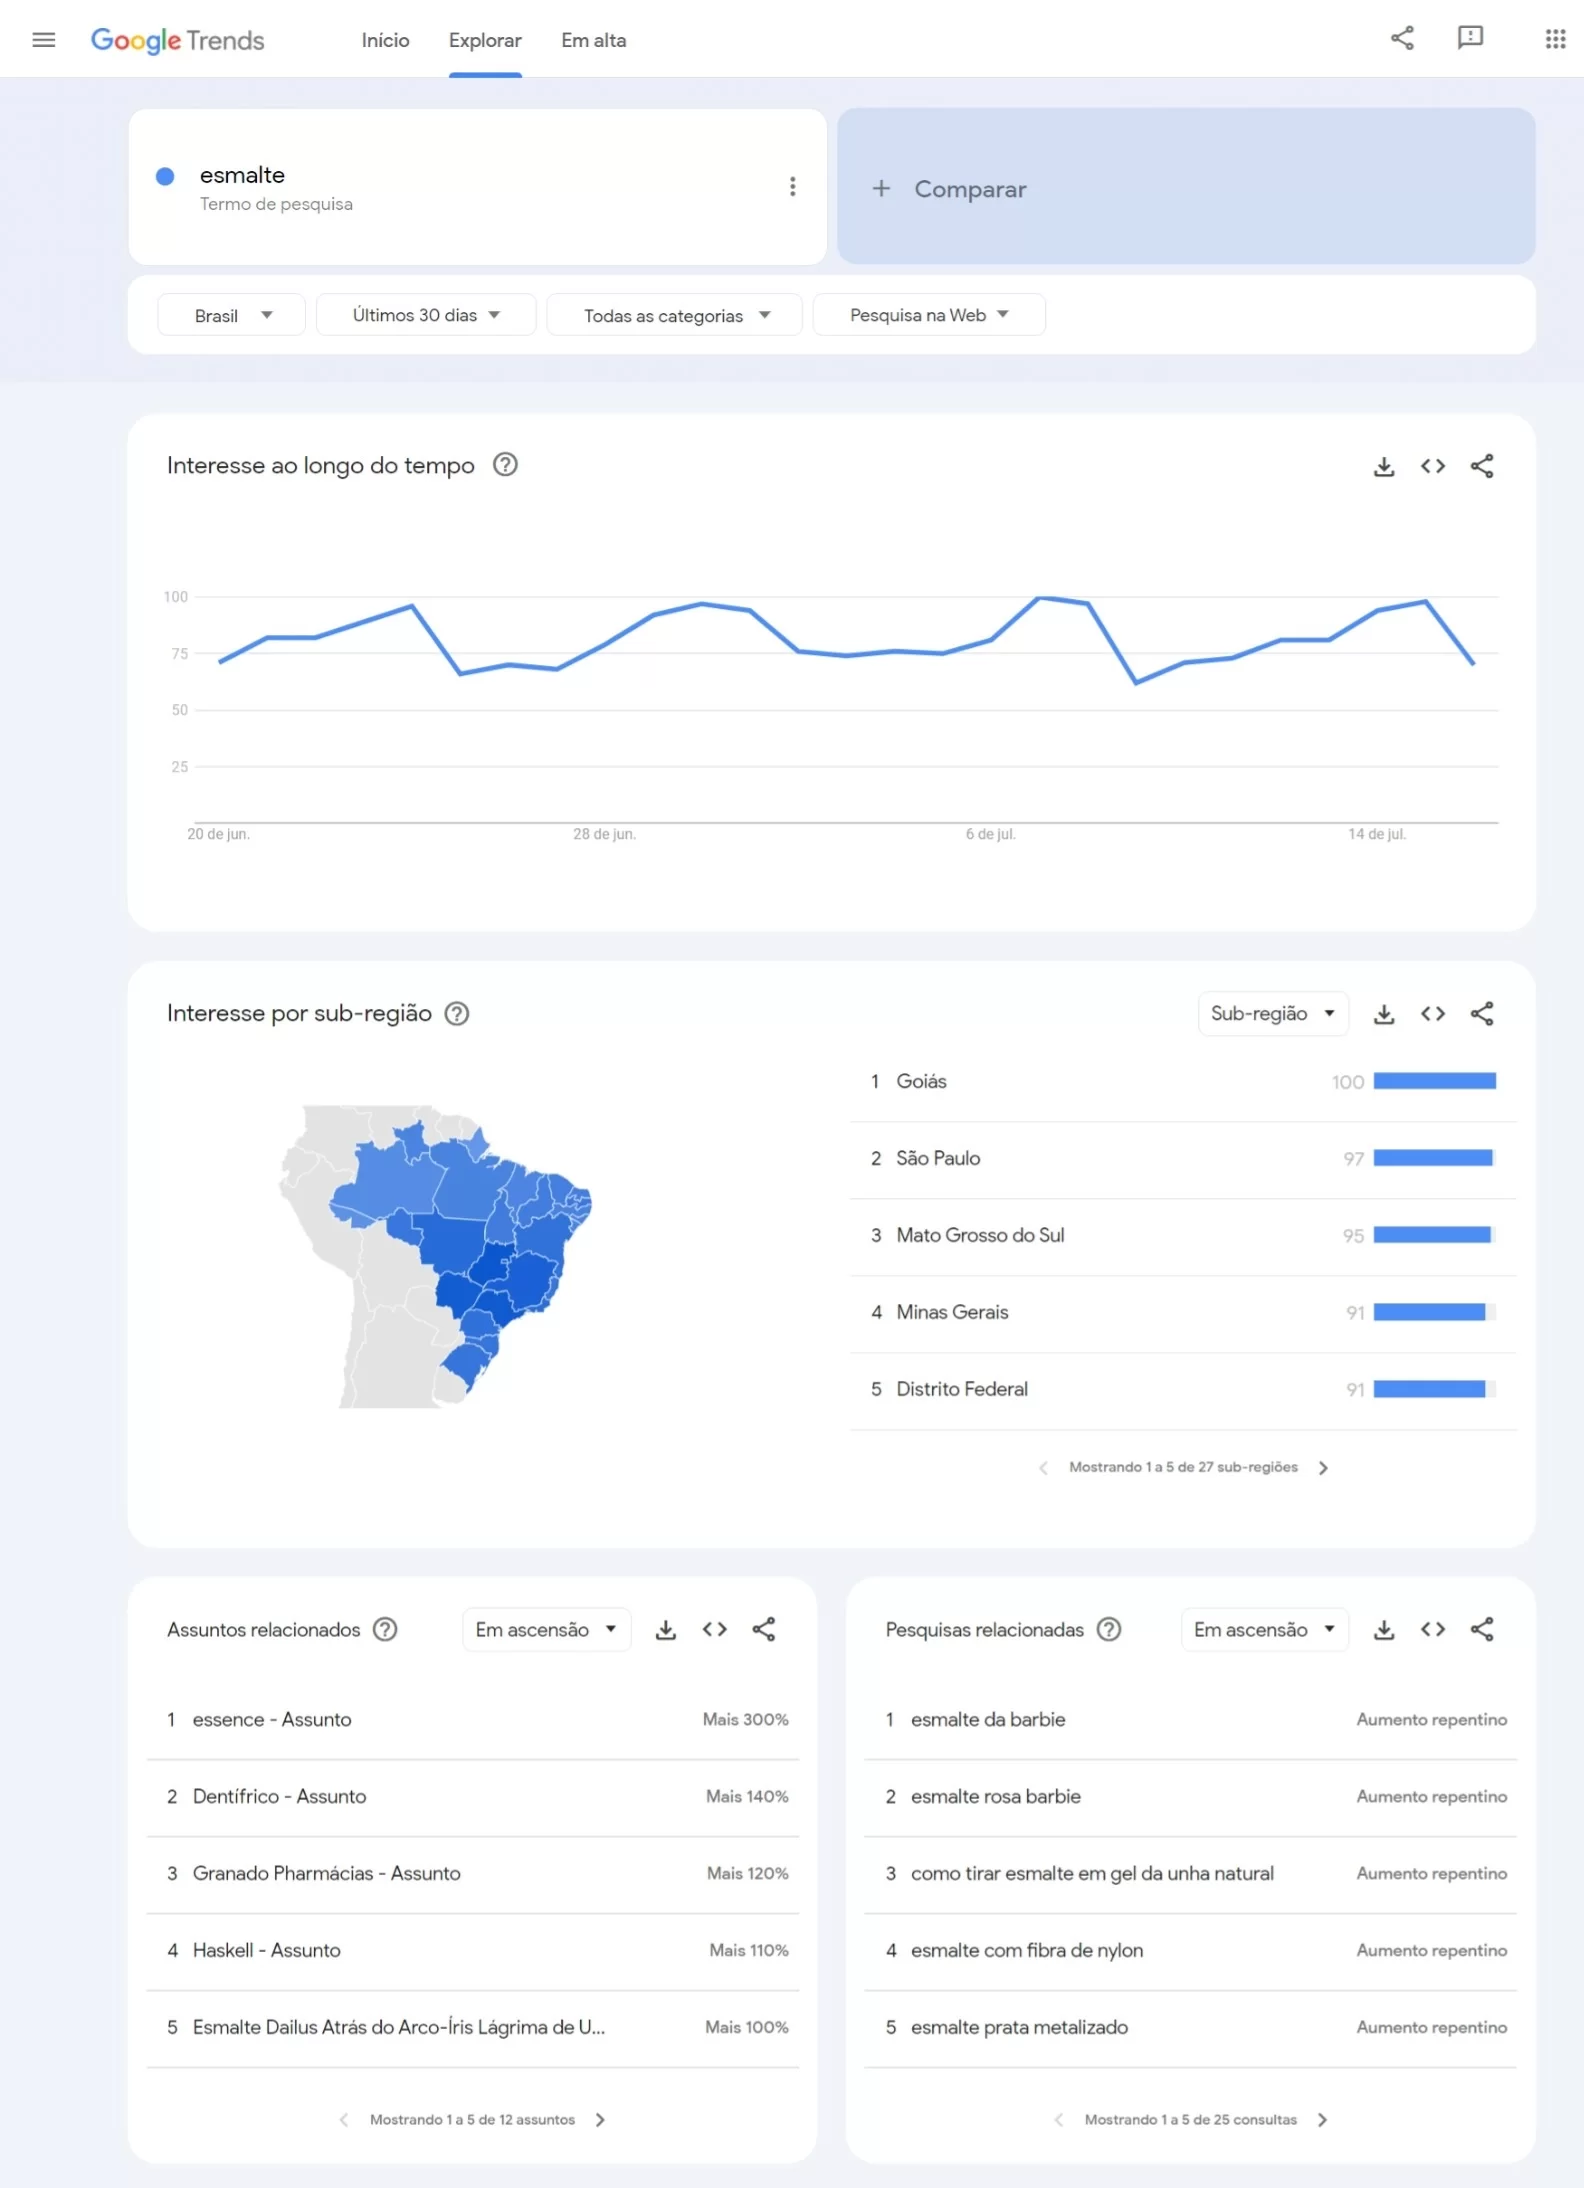 Brasil é líder no ranking de pesquisa por esmalte no Google (Foto: Reprodução/Google Trends)